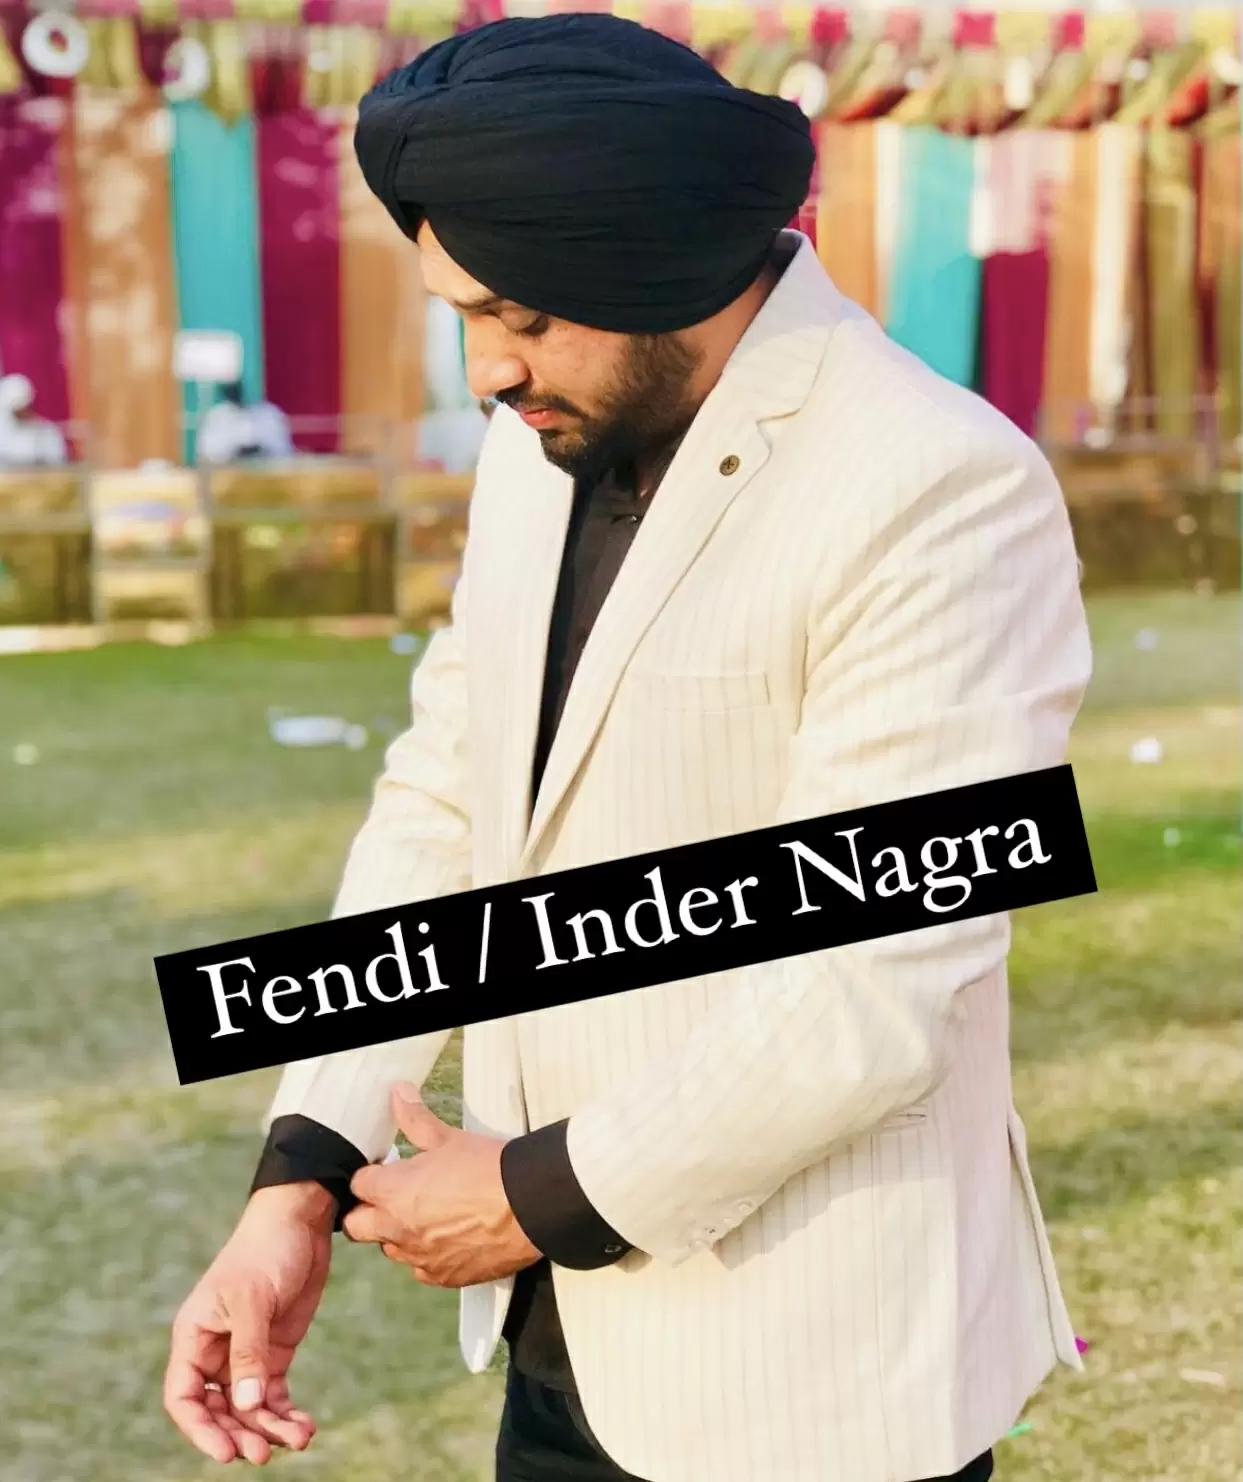 Fendi Inder Nagra Mp3 Download Song - Mr-Punjab